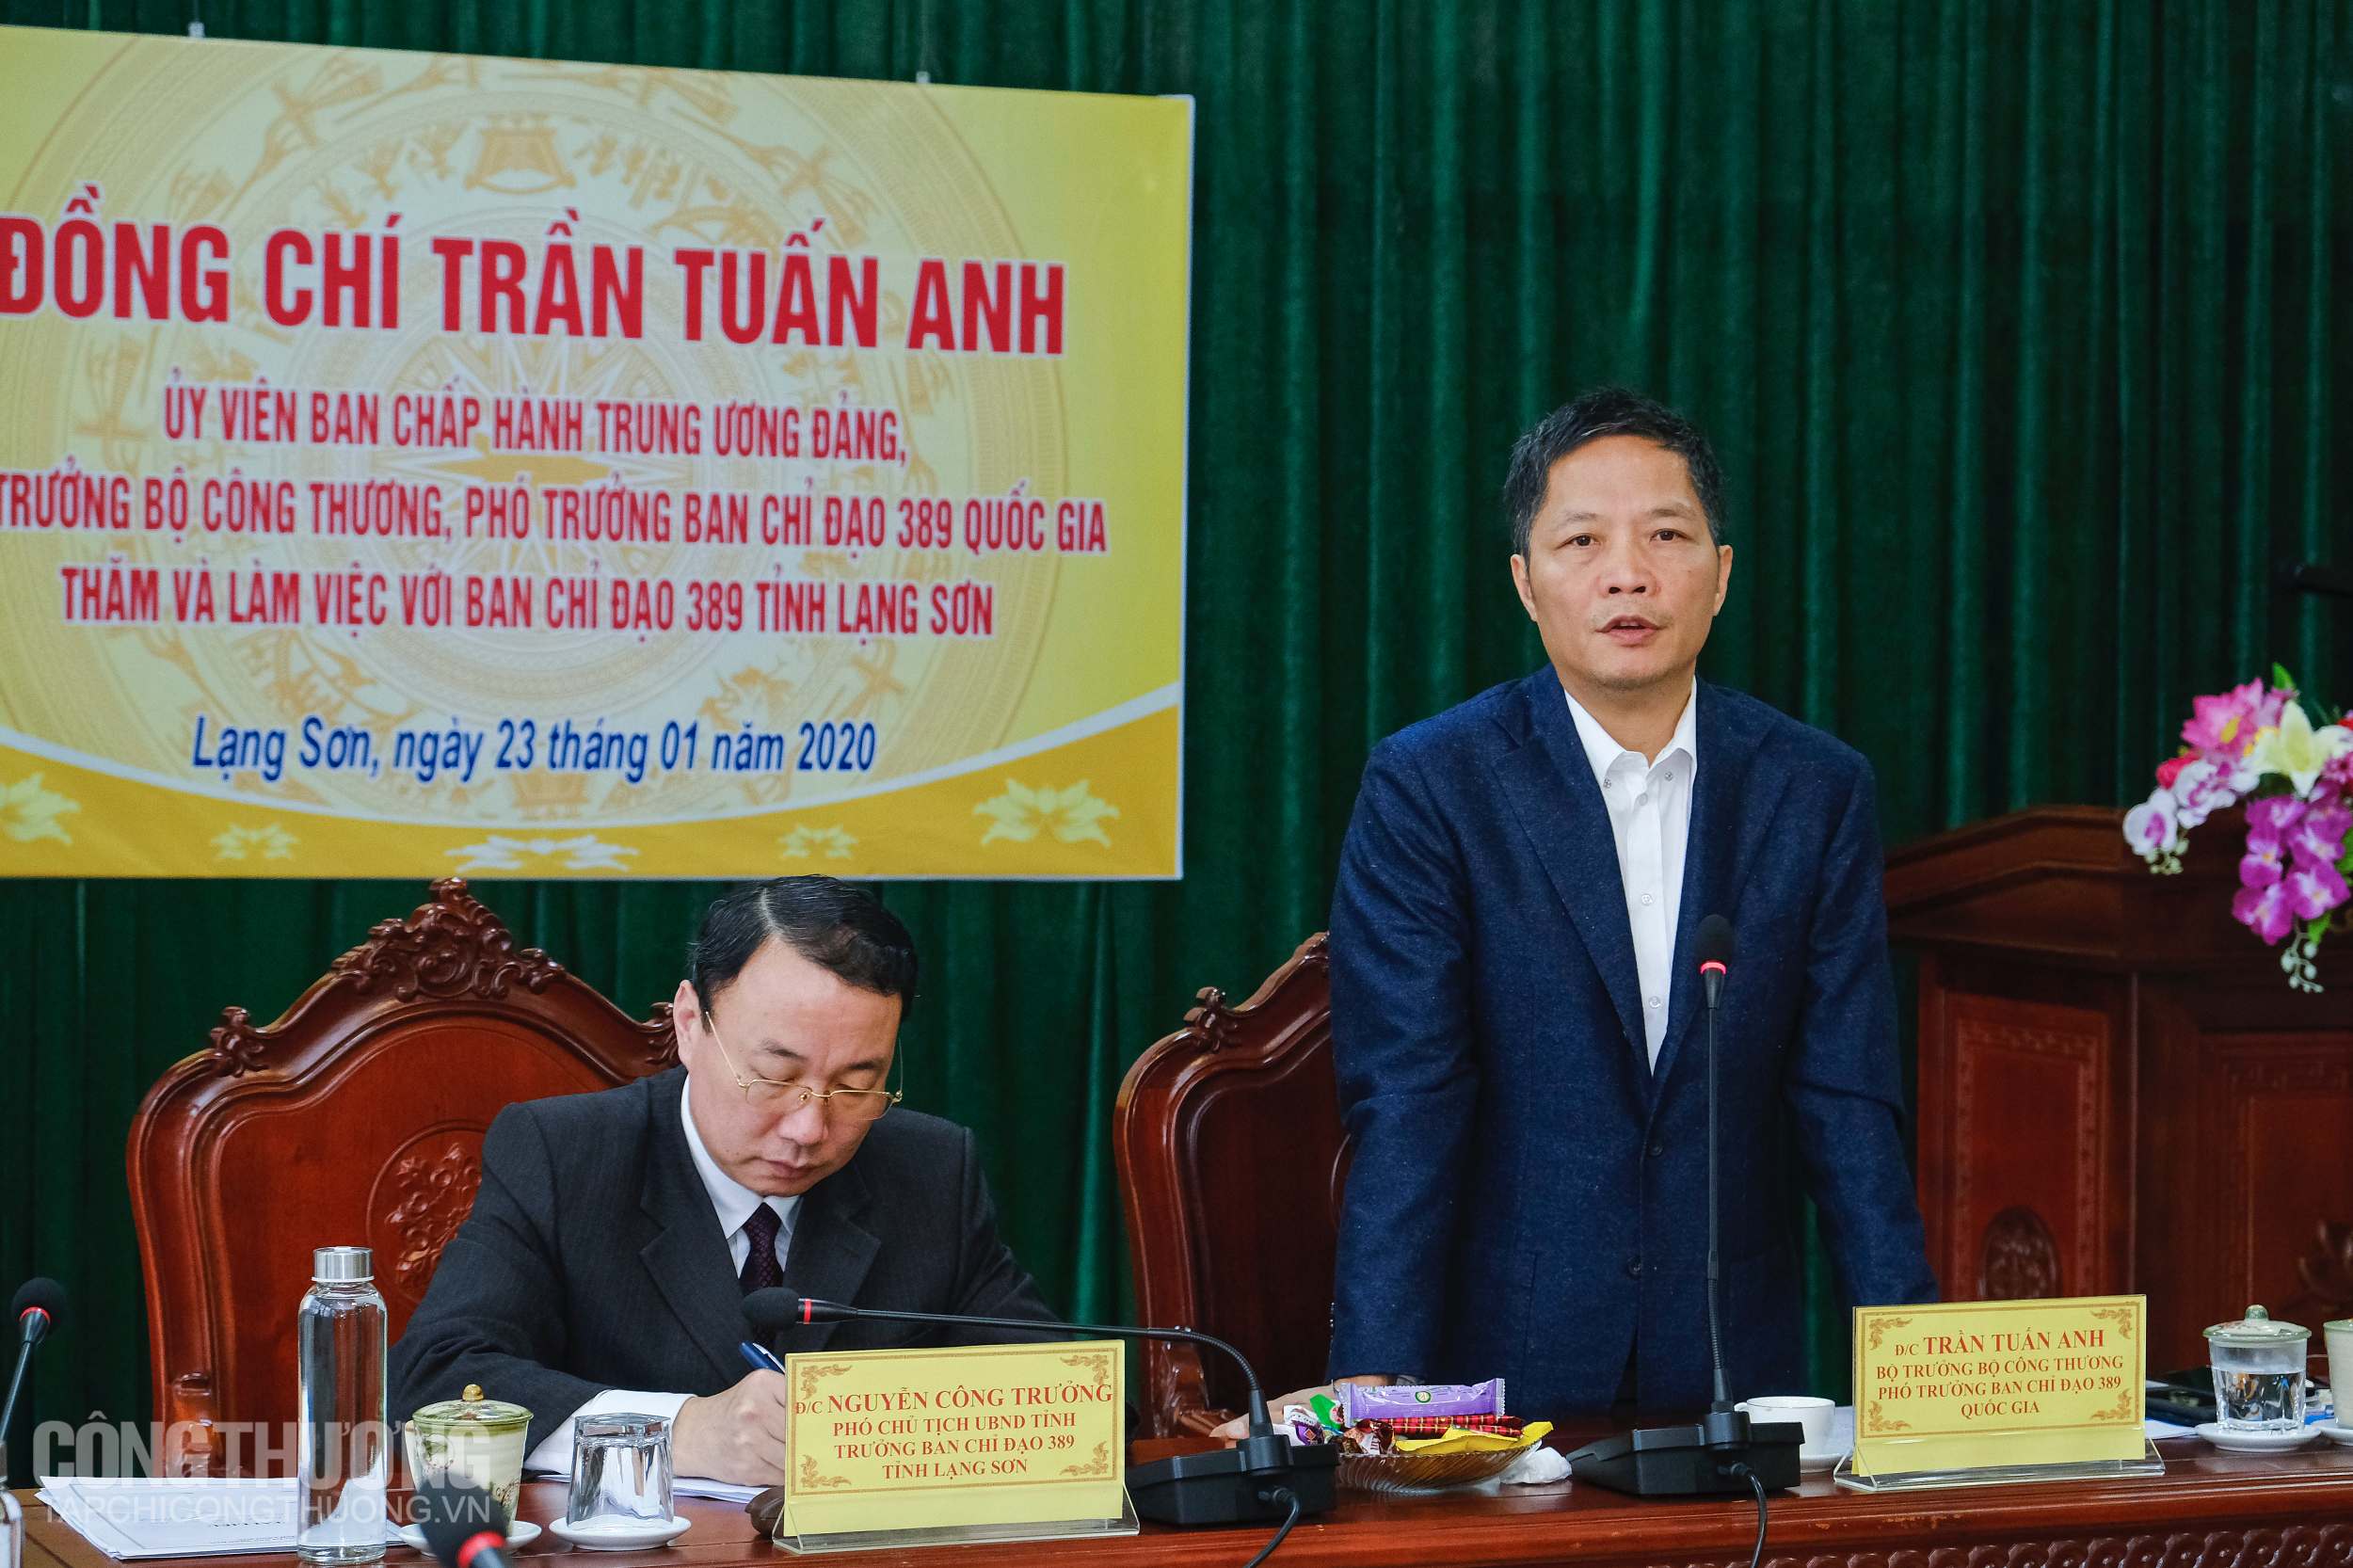 Bộ trưởng Trần Tuấn Anh bày tỏ ấn tượng về tinh thần trách nhiệm đồng bộ và toàn diện của tỉnh Lạng Sơn trong phát triển thương mại qua biên giới